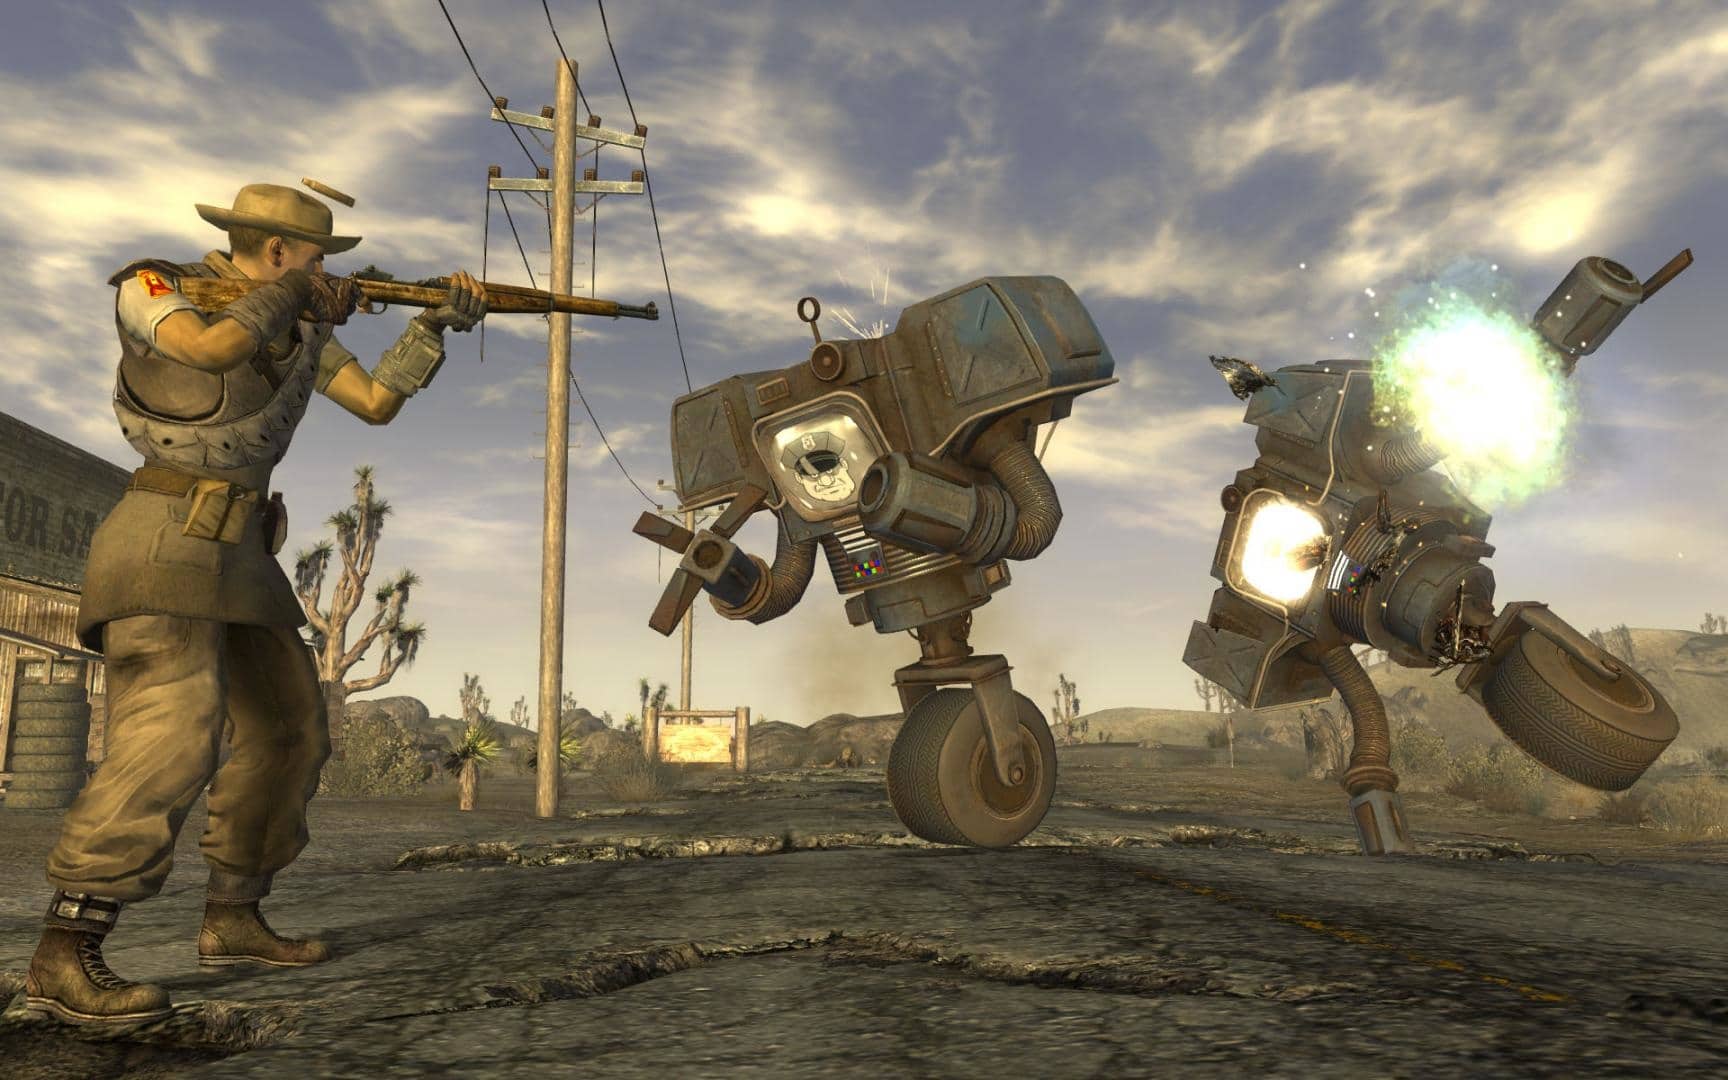  (Второй бросок также вызывает у Obsidian большое уважение Fallout: New Vegas - культовая игра, но страдает от ошибок. Издатель Bethesda, вероятно, установил слишком жесткие сроки завершения работ.)